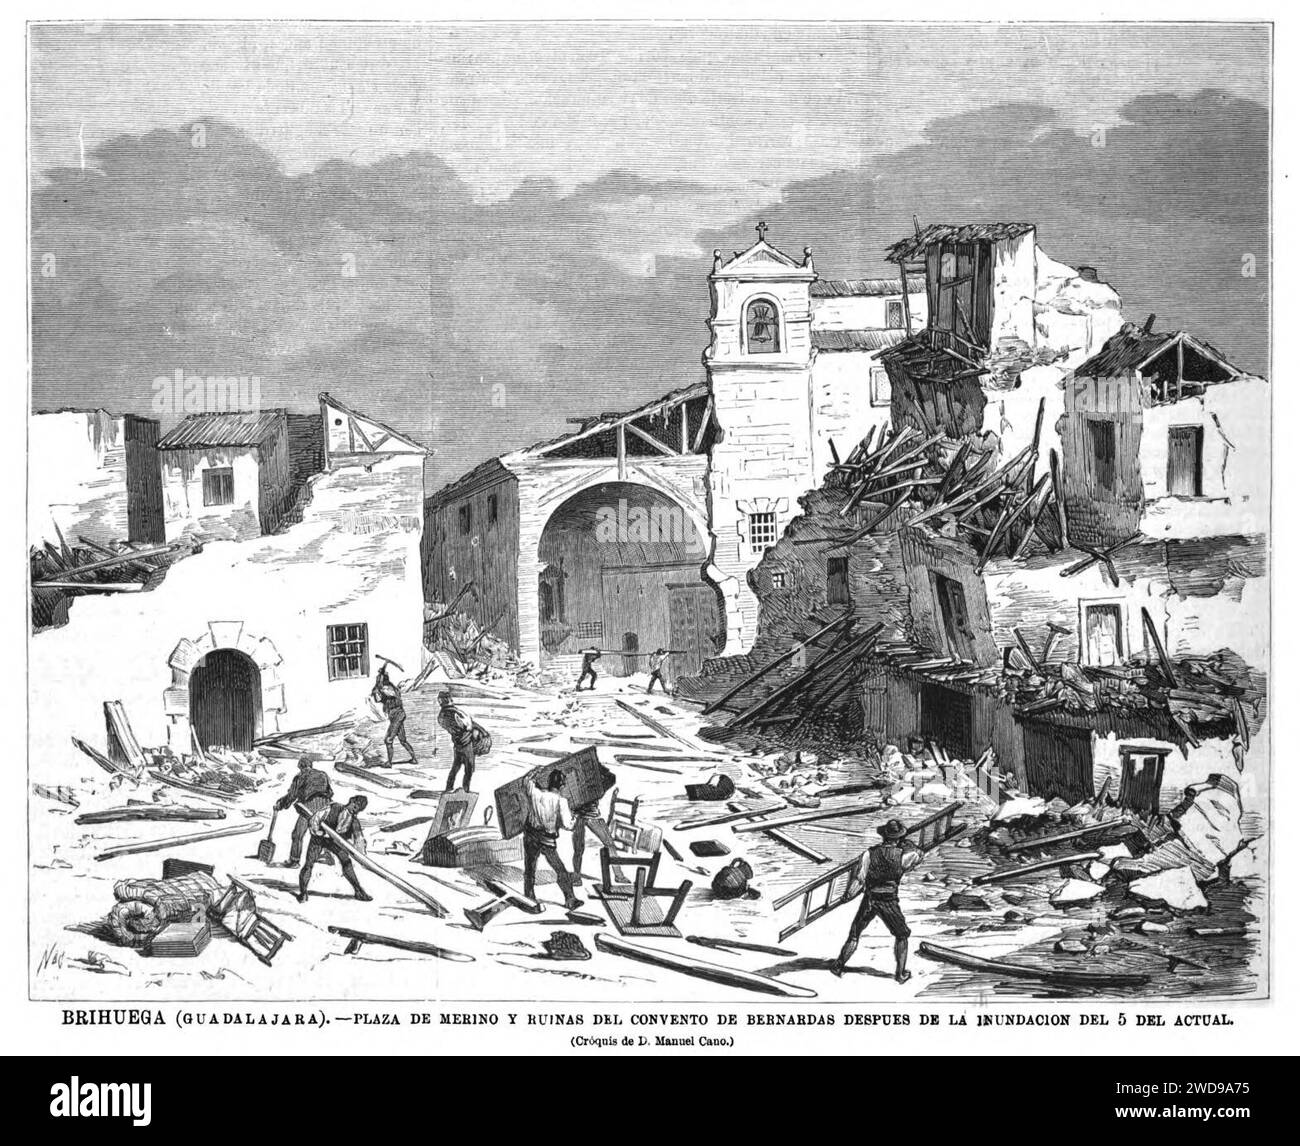 1877-09-22, La Ilustración Española y Americana, Brihuega (Guadalajara), Plaza de Merino y ruinas del convento de bernardas después de la inundación del 5 del actual. Stock Photo